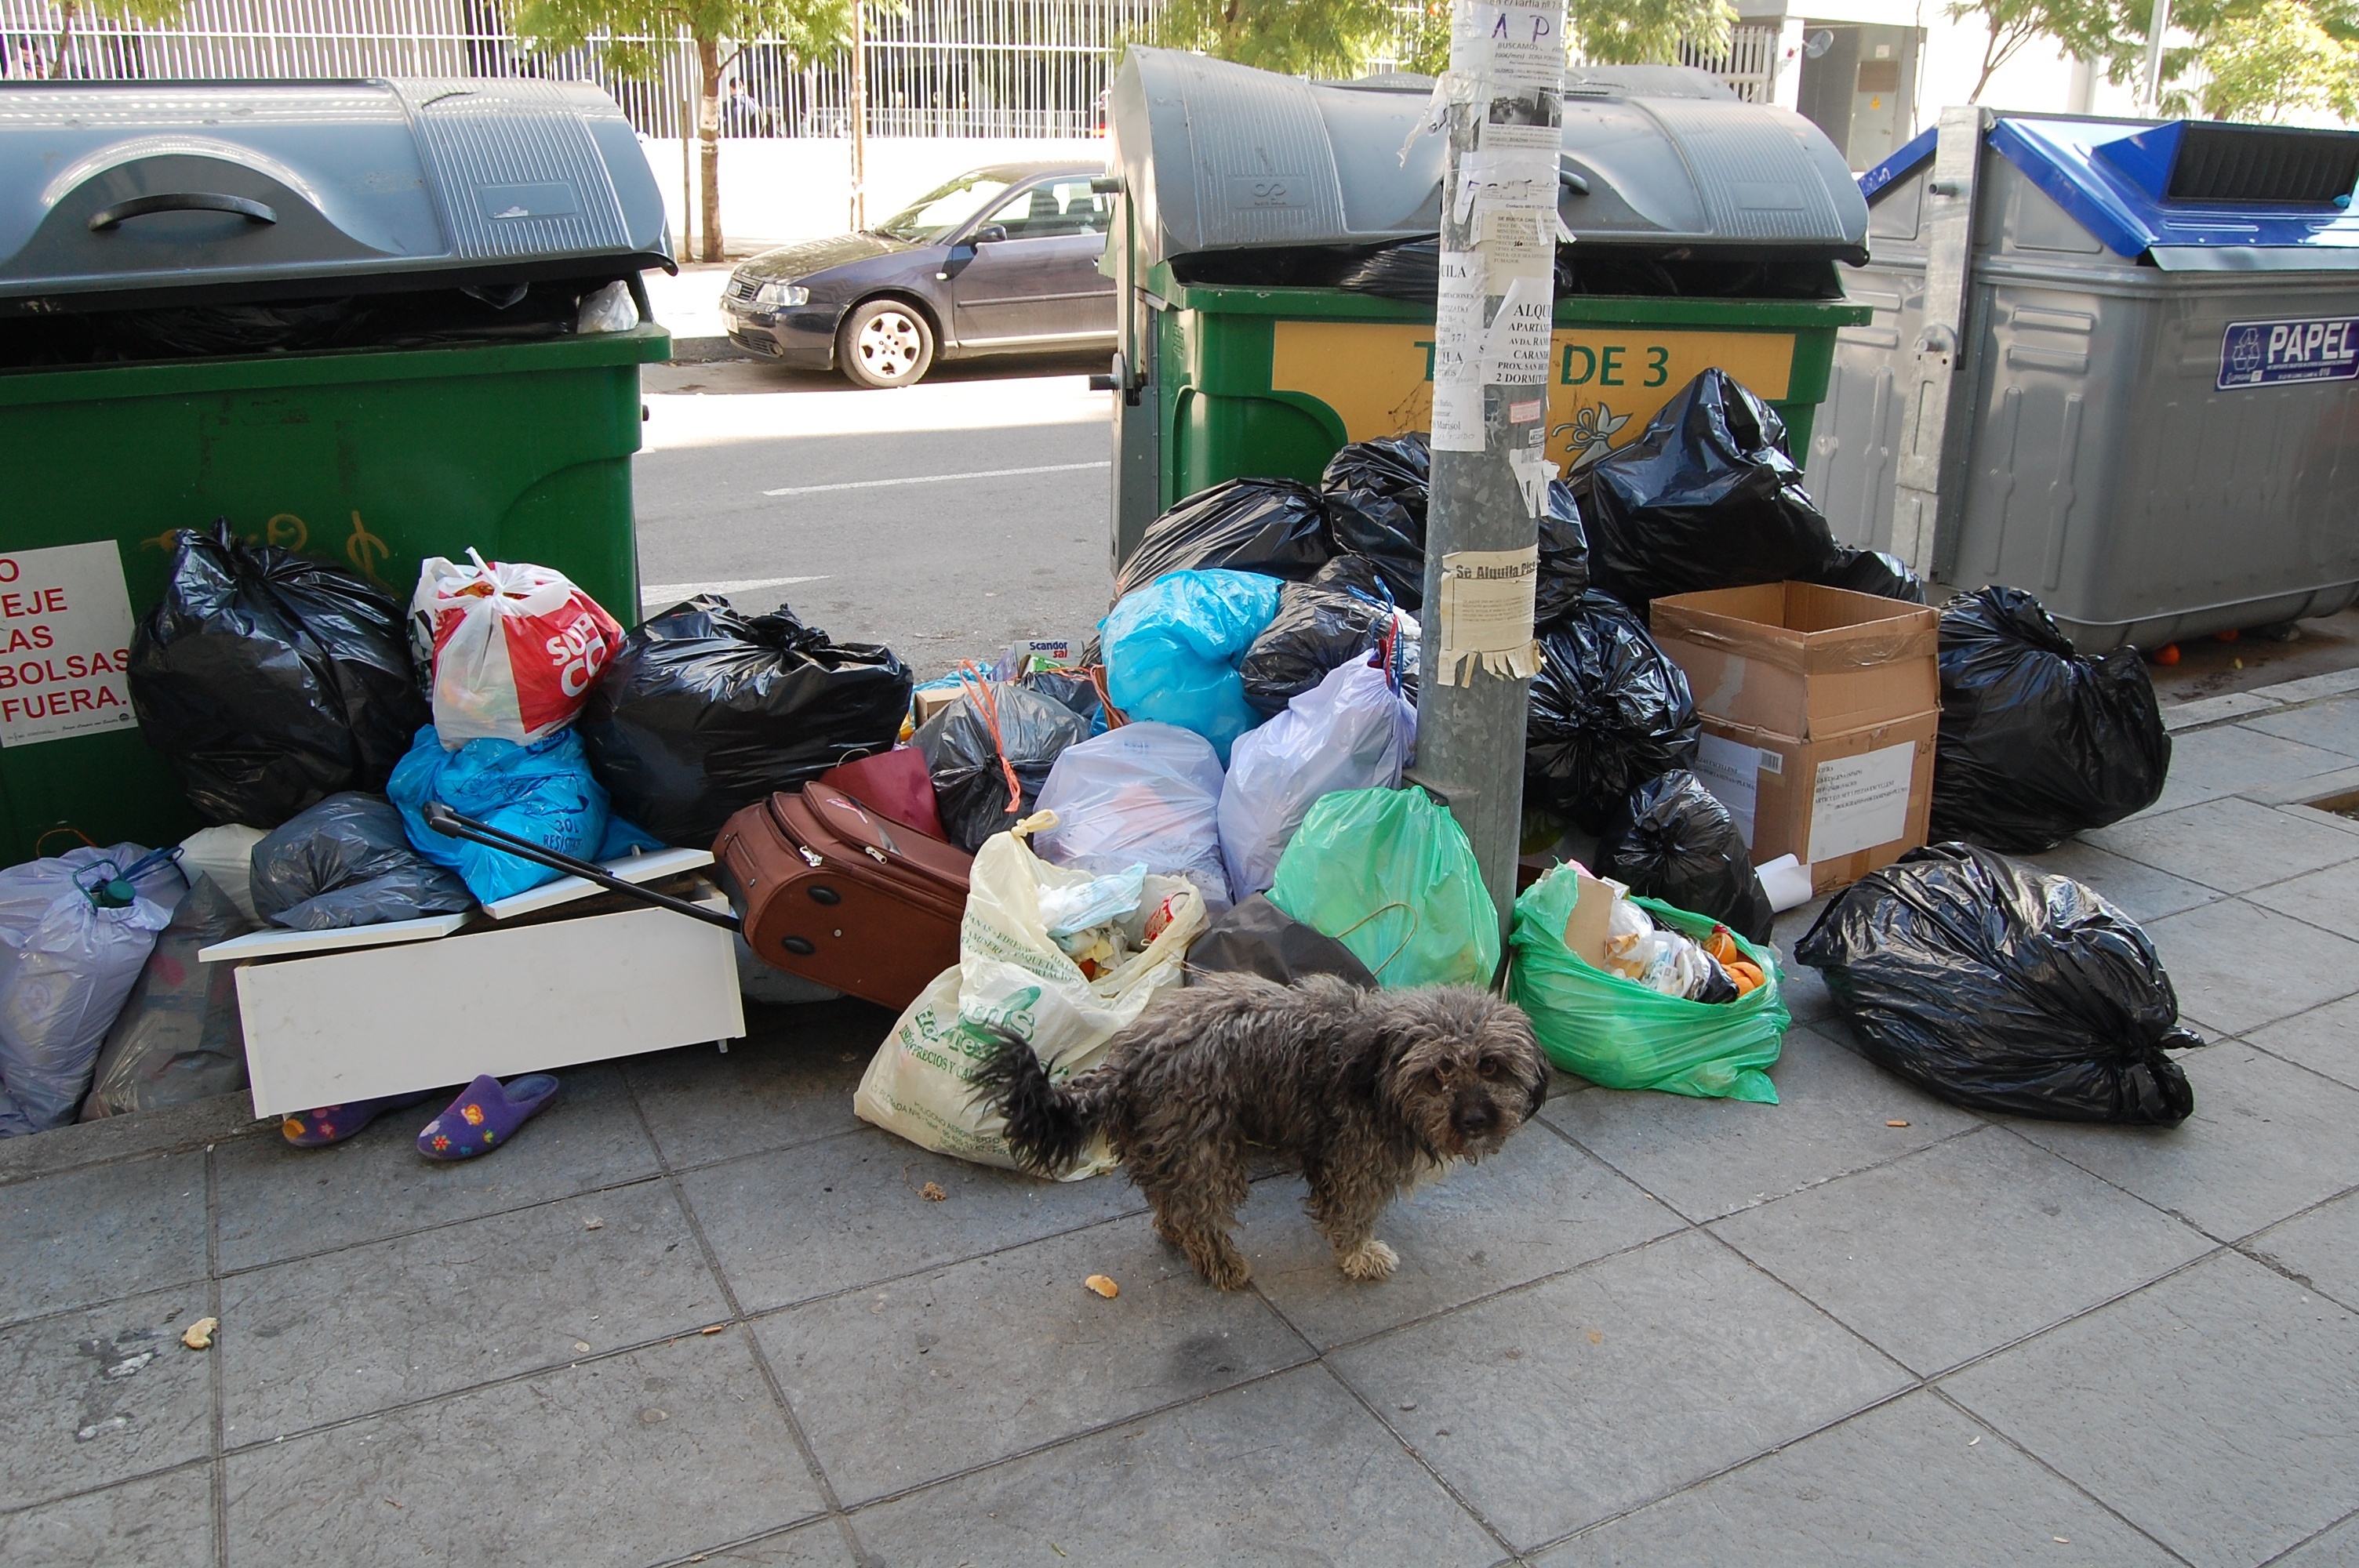 El Ayuntamiento calcula más de 1,5 millones de kilos de basura sin recoger y contabiliza decenas de incidentes